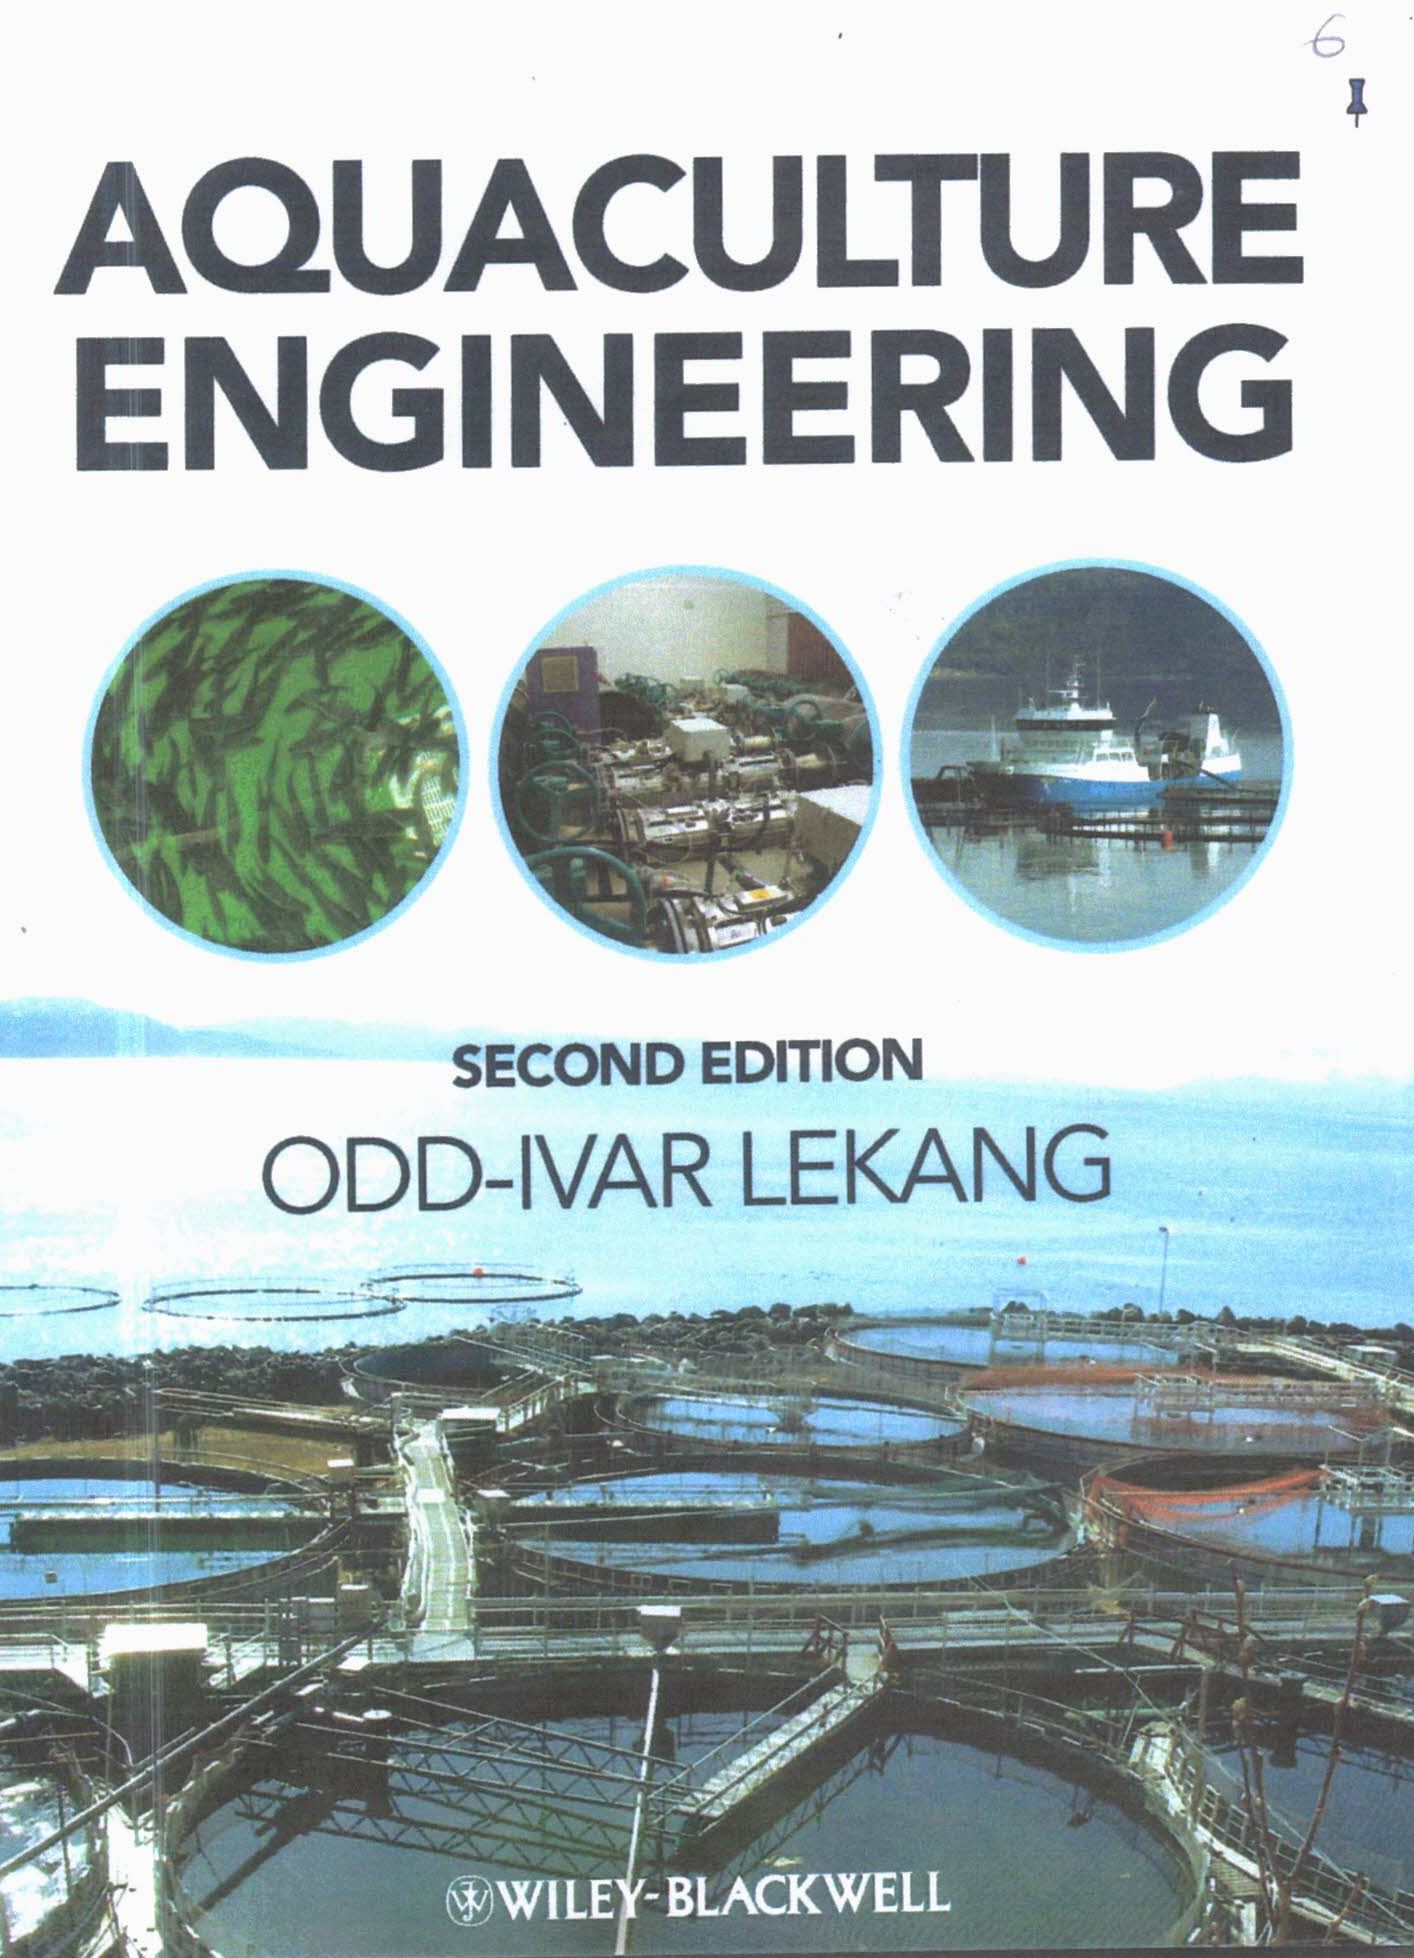 Aquaculture engineering